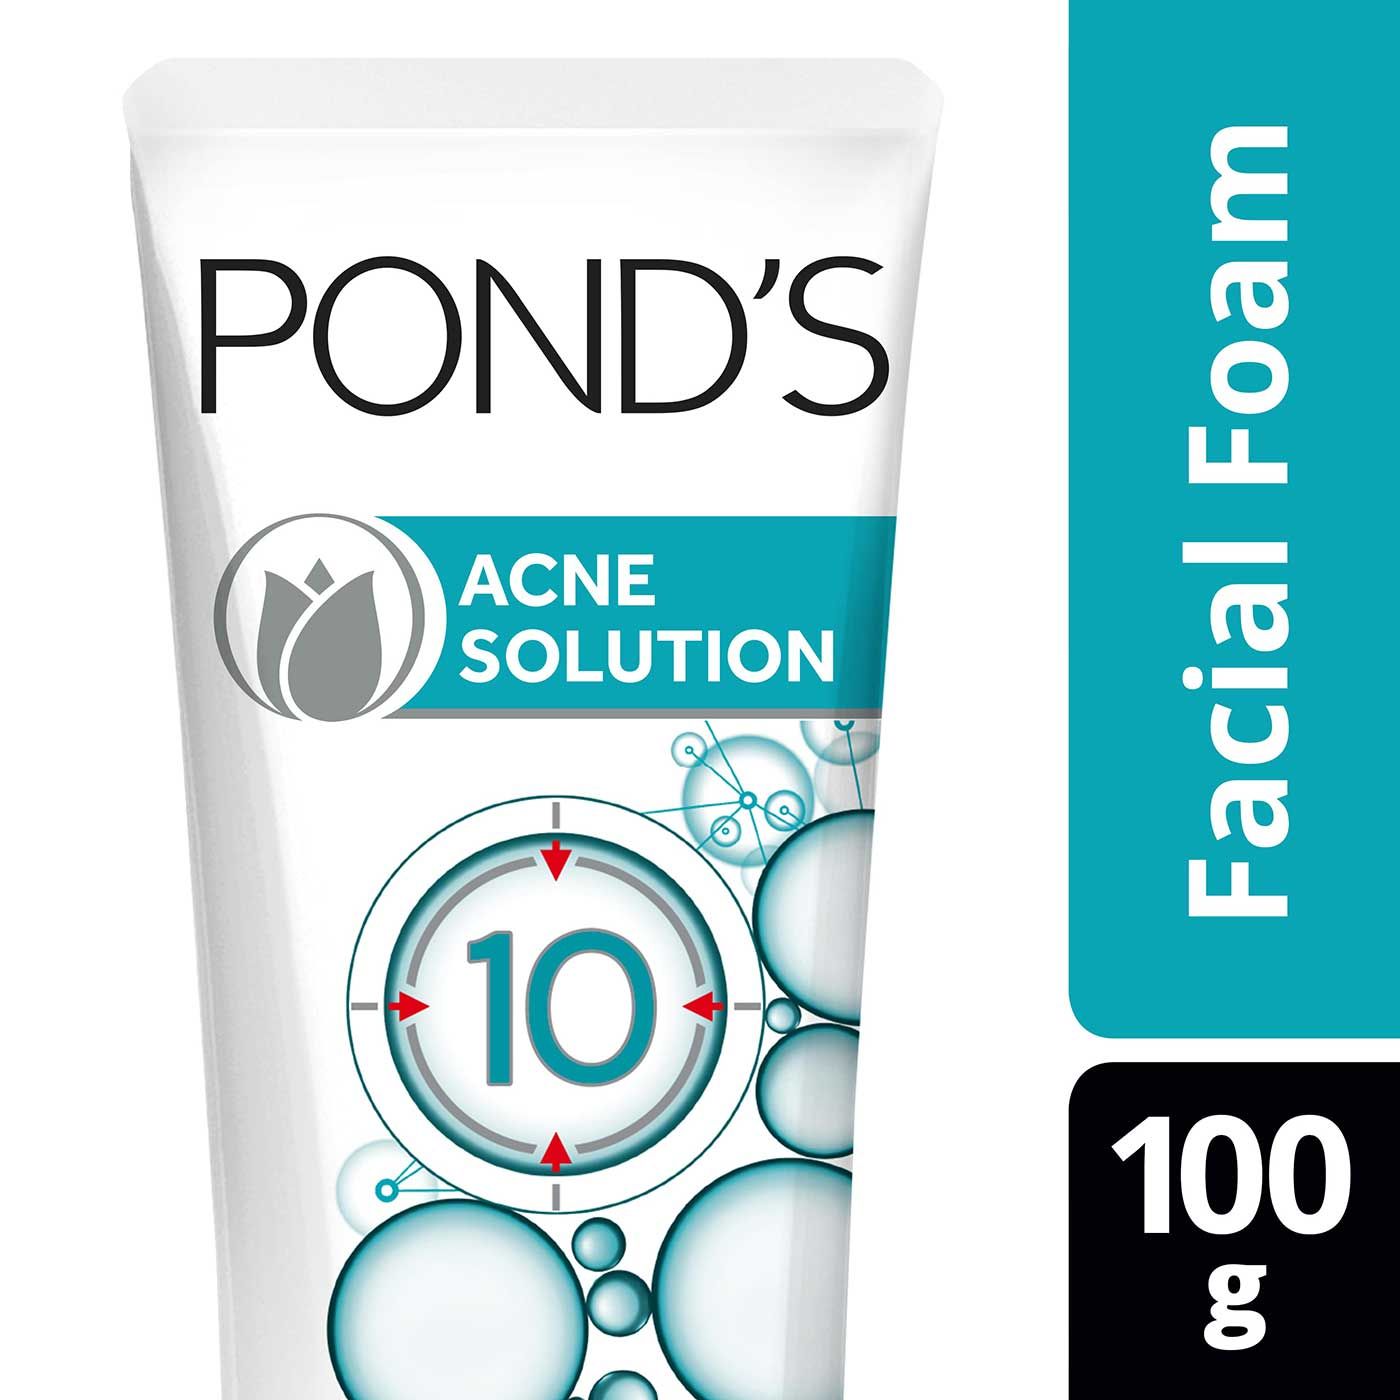 Pond'S Acne Solution Facial Foam 100g - 3